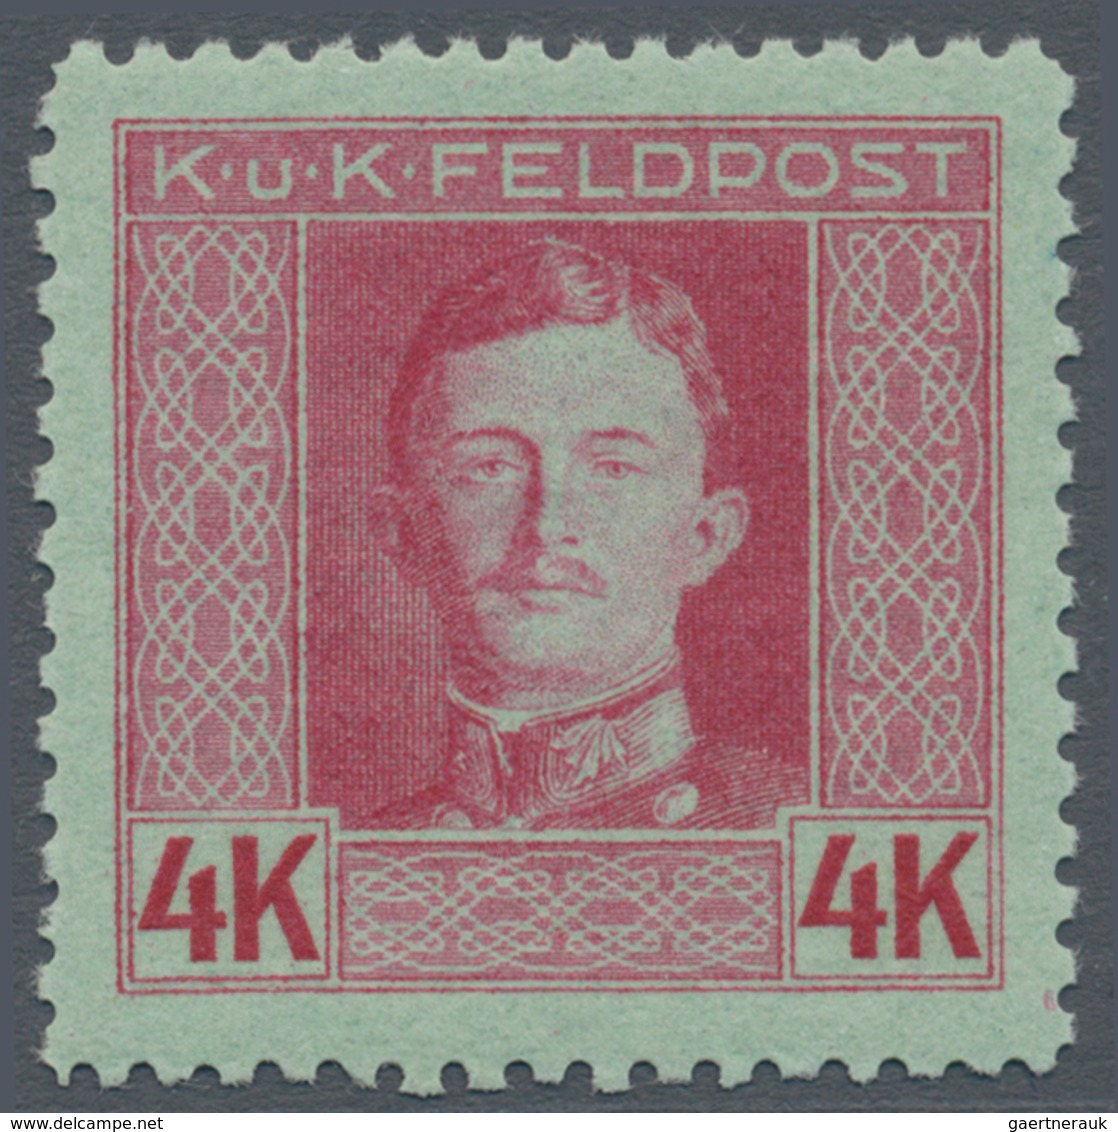 Österreichisch-Ungarische Feldpost - Allgemeine Ausgabe: 1917 Kaiser Karl I komplette postfrische Ga